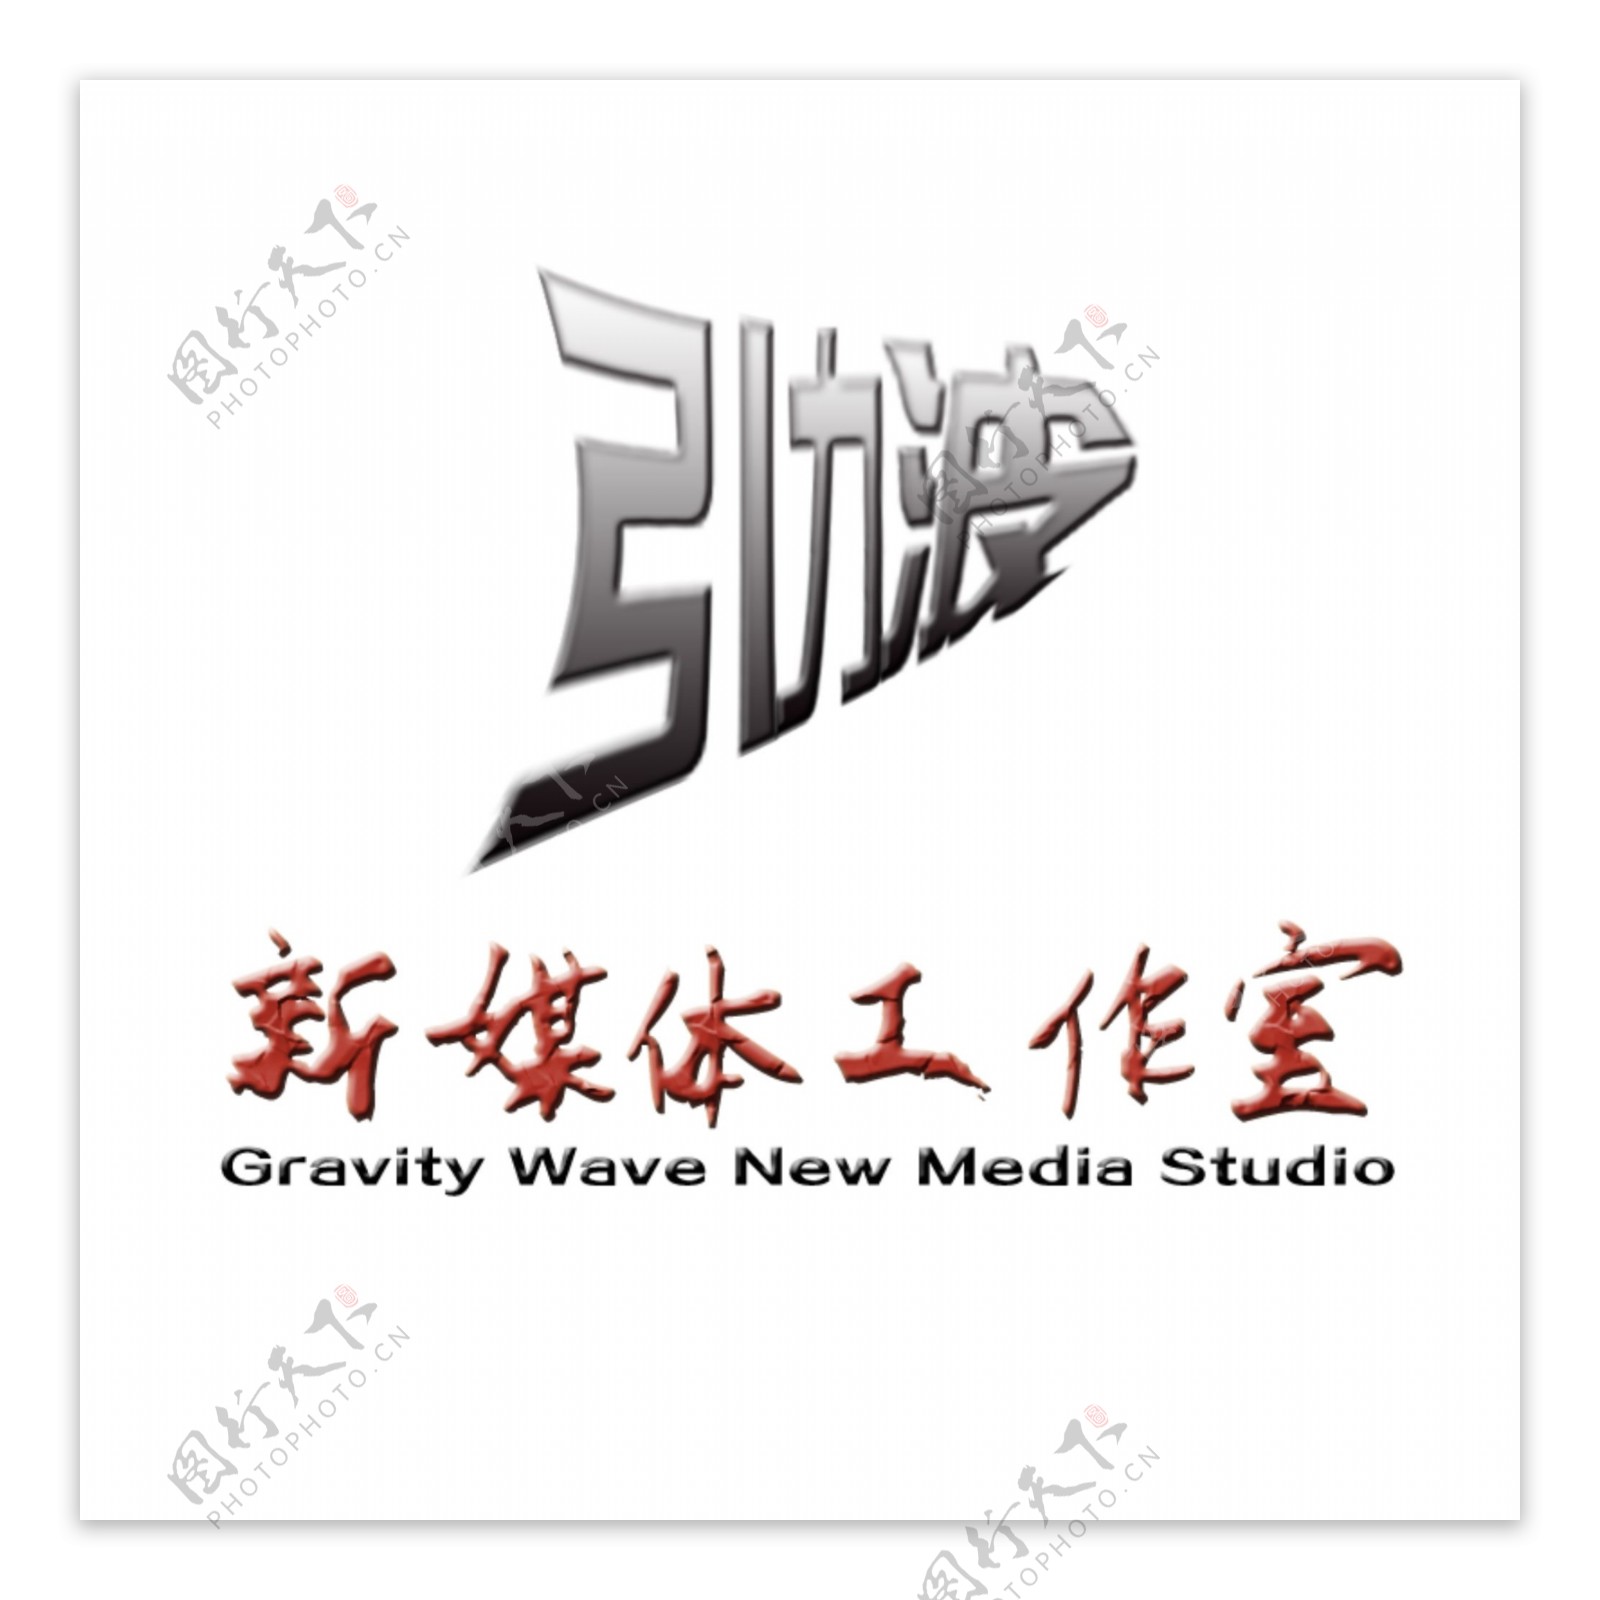 新媒体工作室LOGO创意设计标志引力波